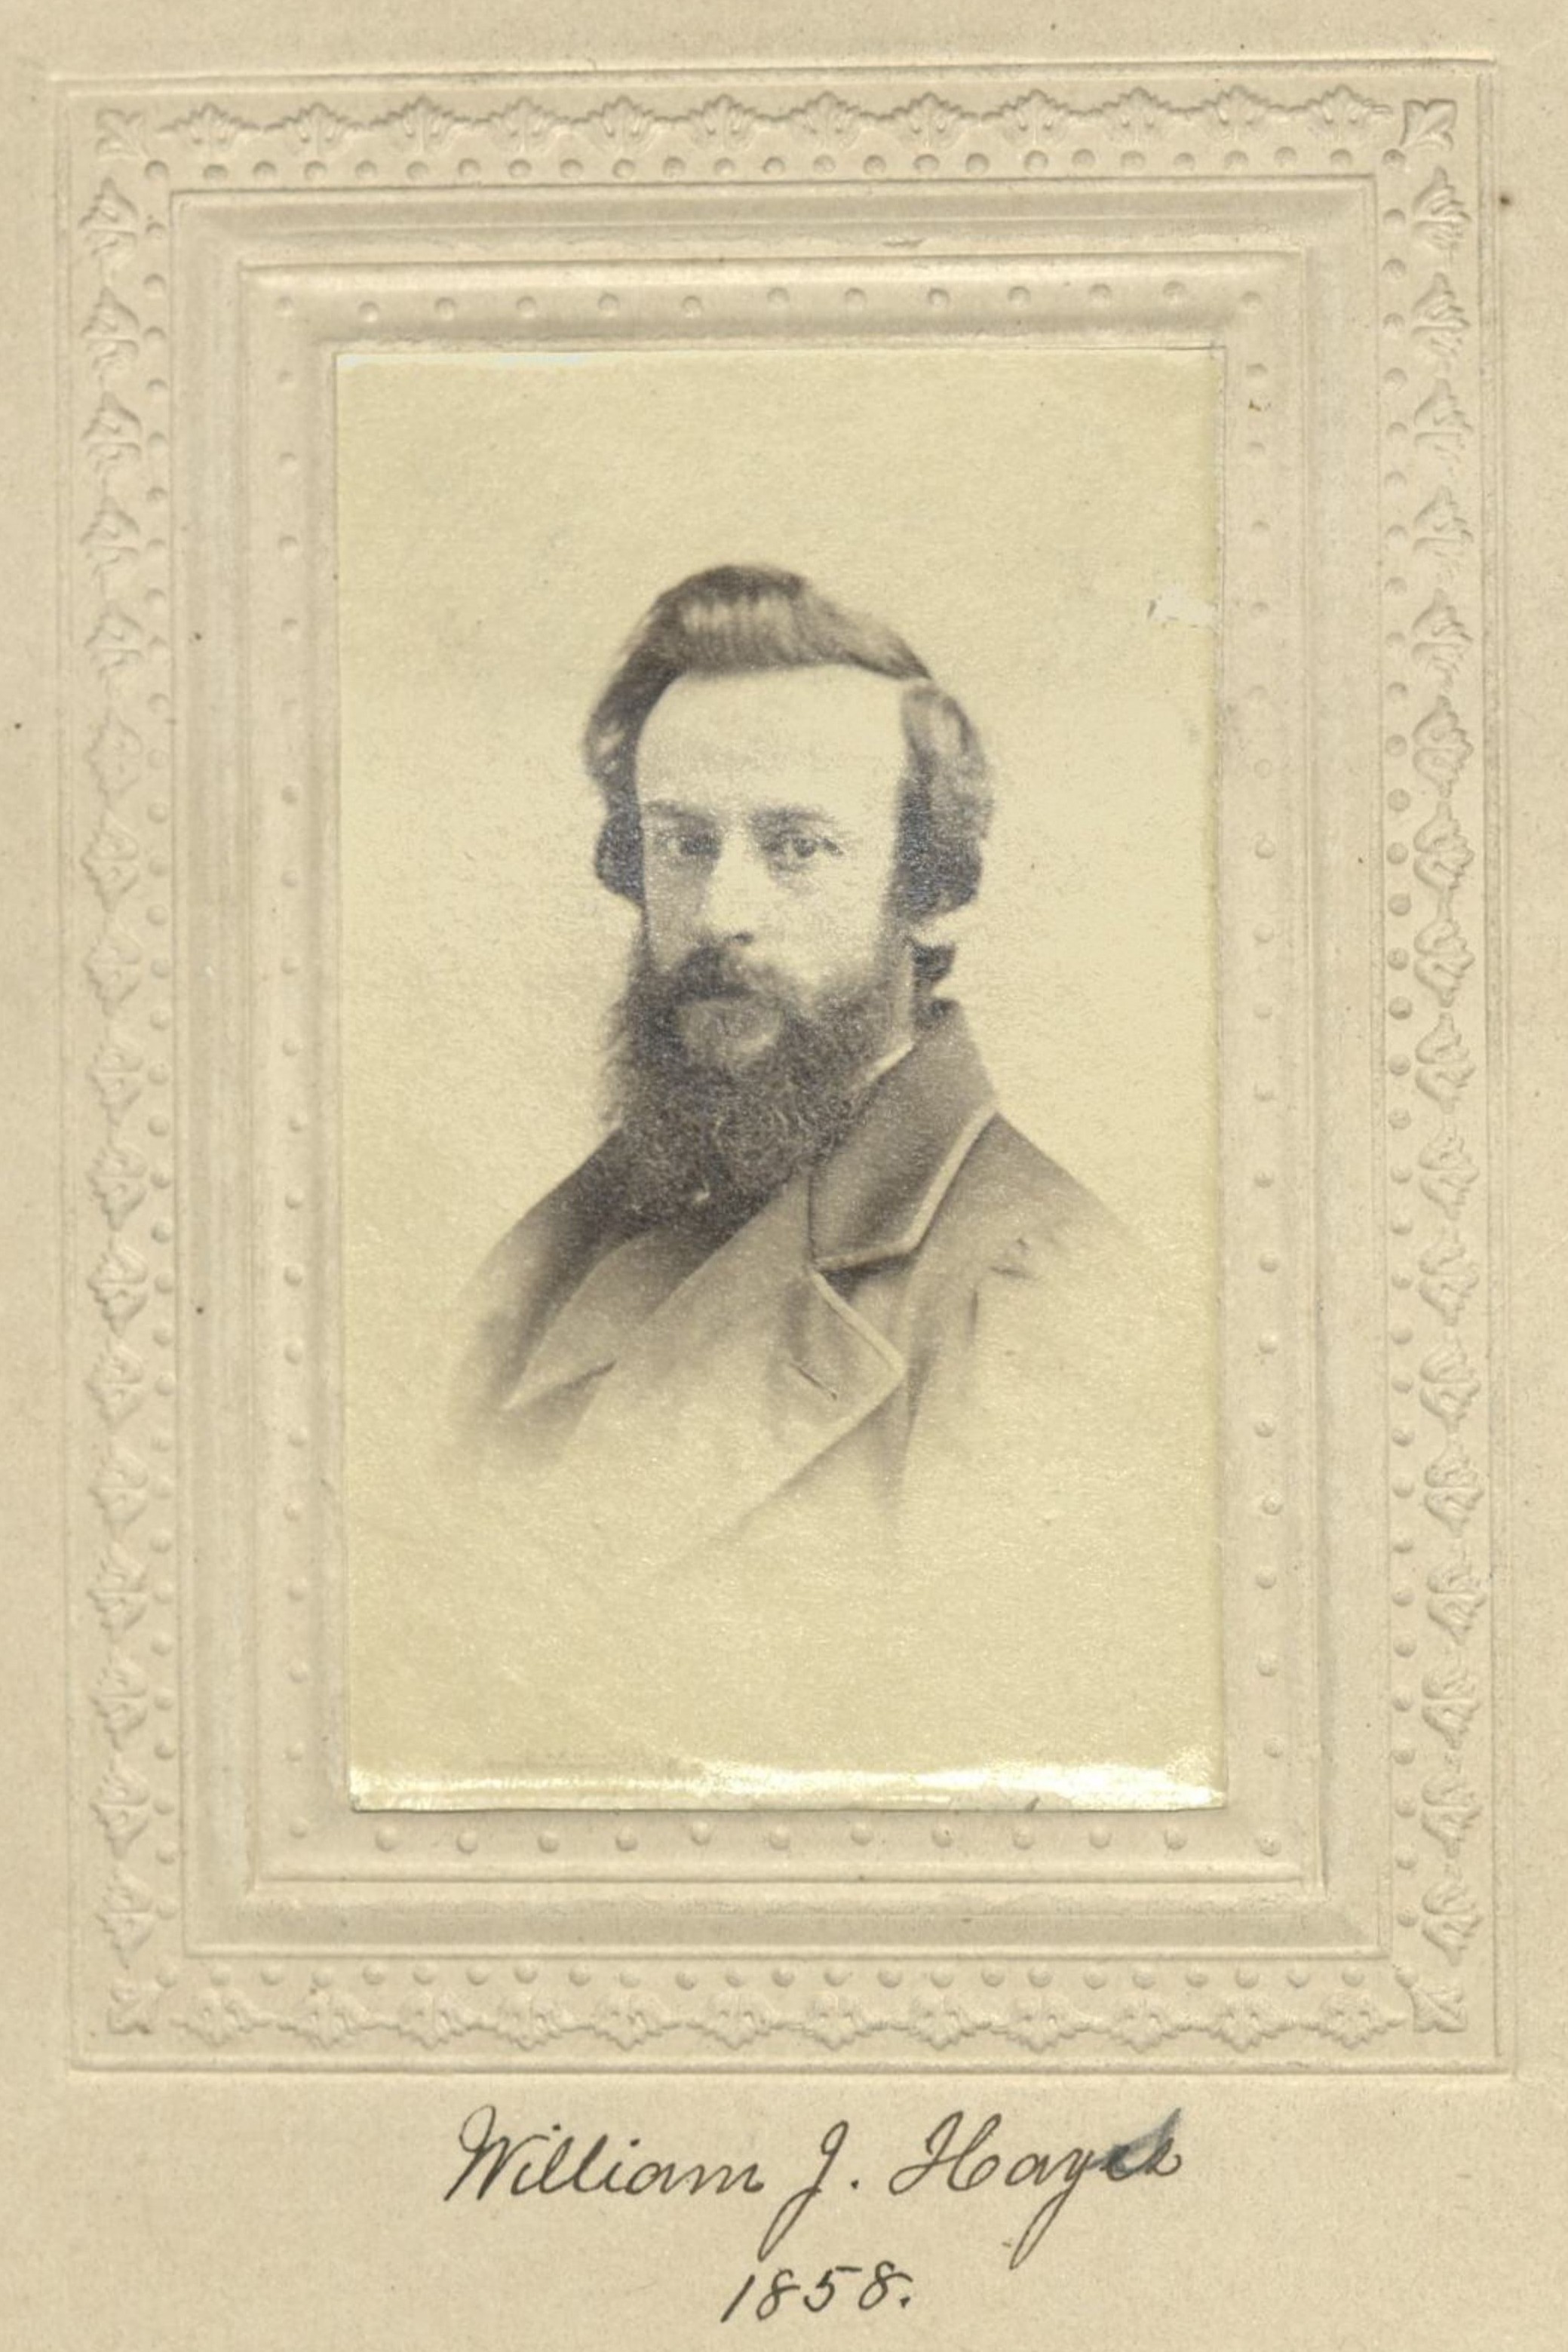 Member portrait of William J. Hays